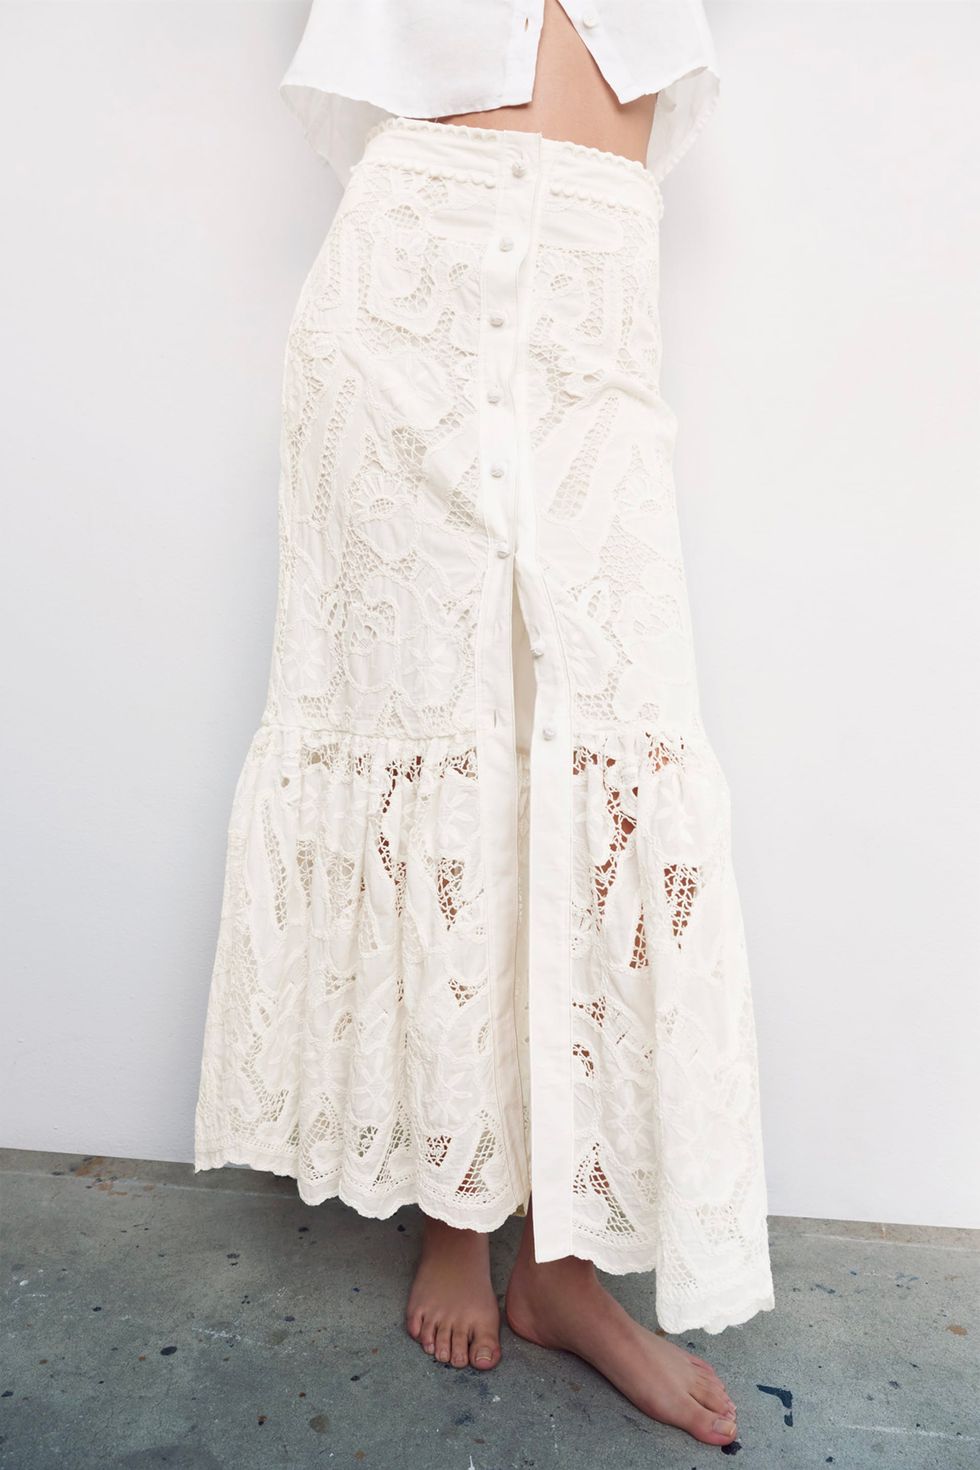 Temporizador Manto preferir Lo mejor de Zara: Esta falda larga blanca bordada perforada